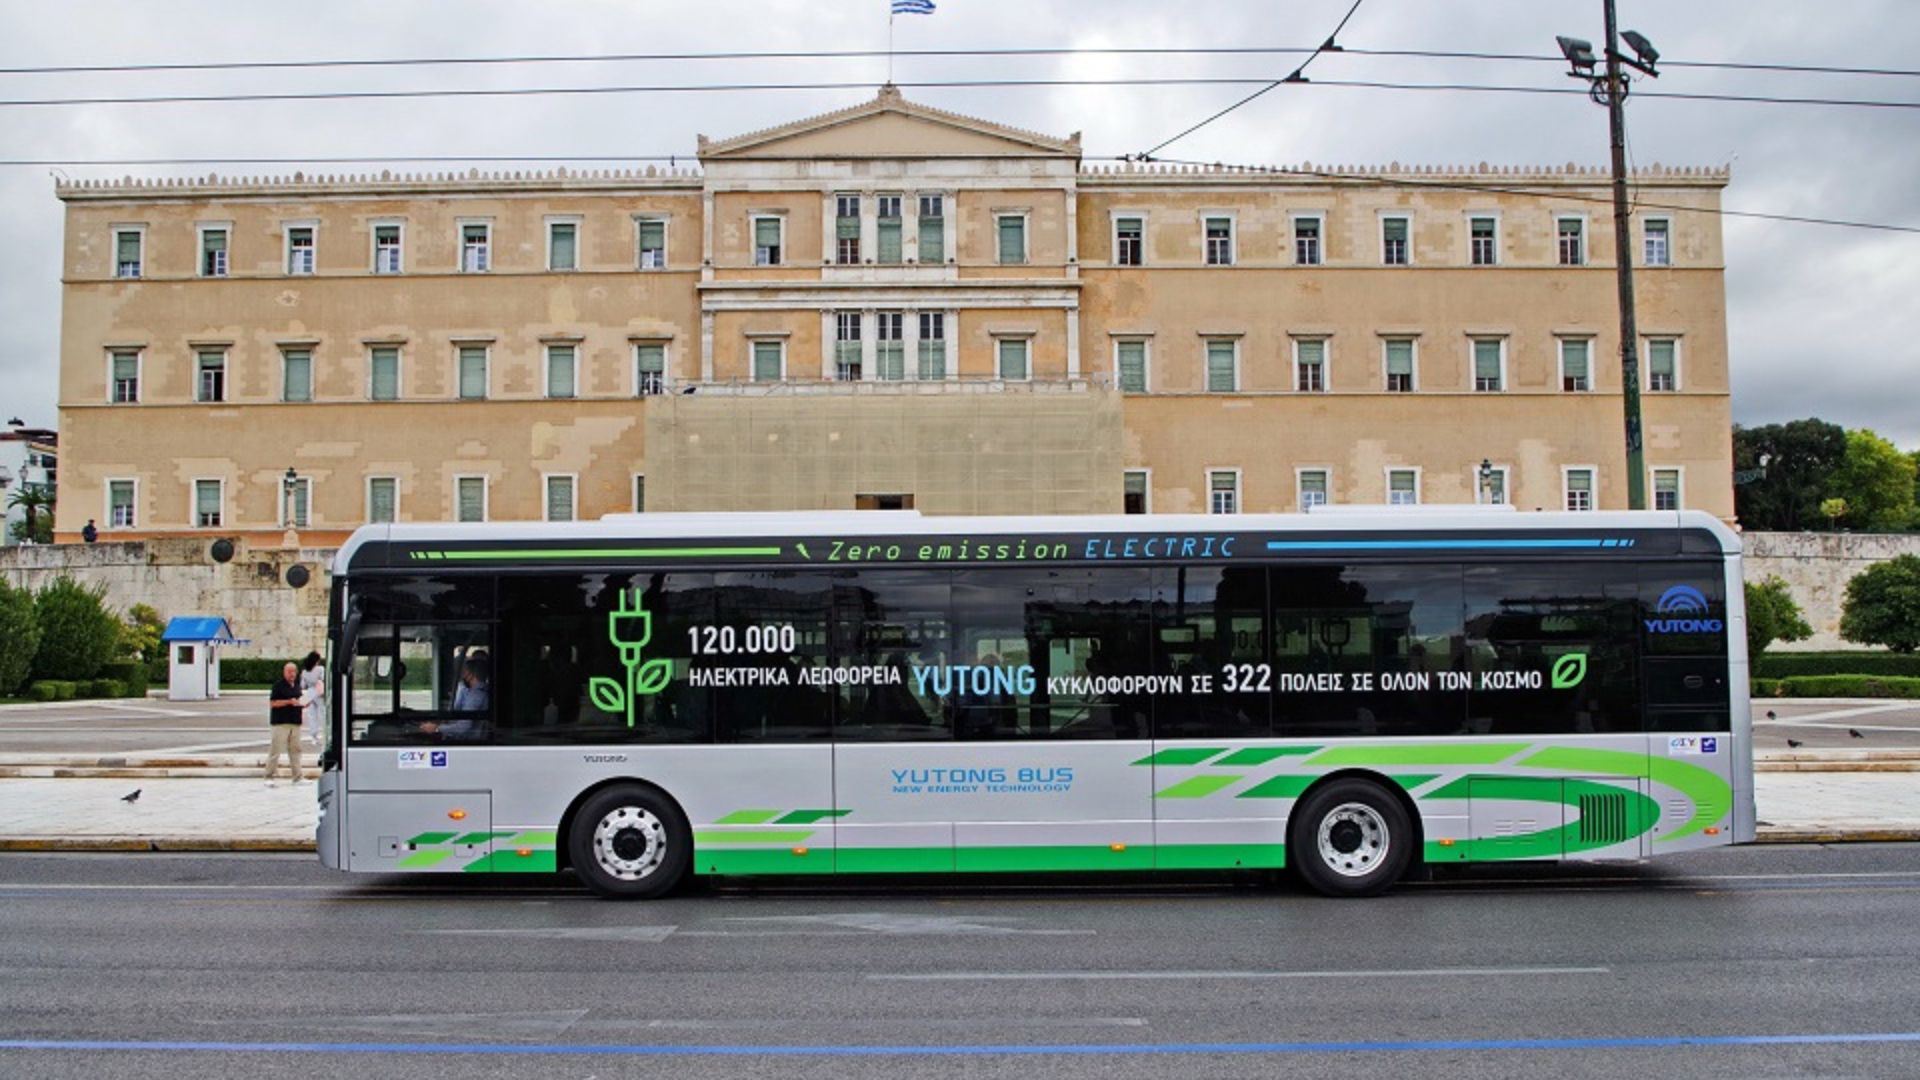 Αθήνα-Θεσσαλονίκη: Τα ηλεκτρικά λεωφορεία μπαίνουν στην παραγωγή